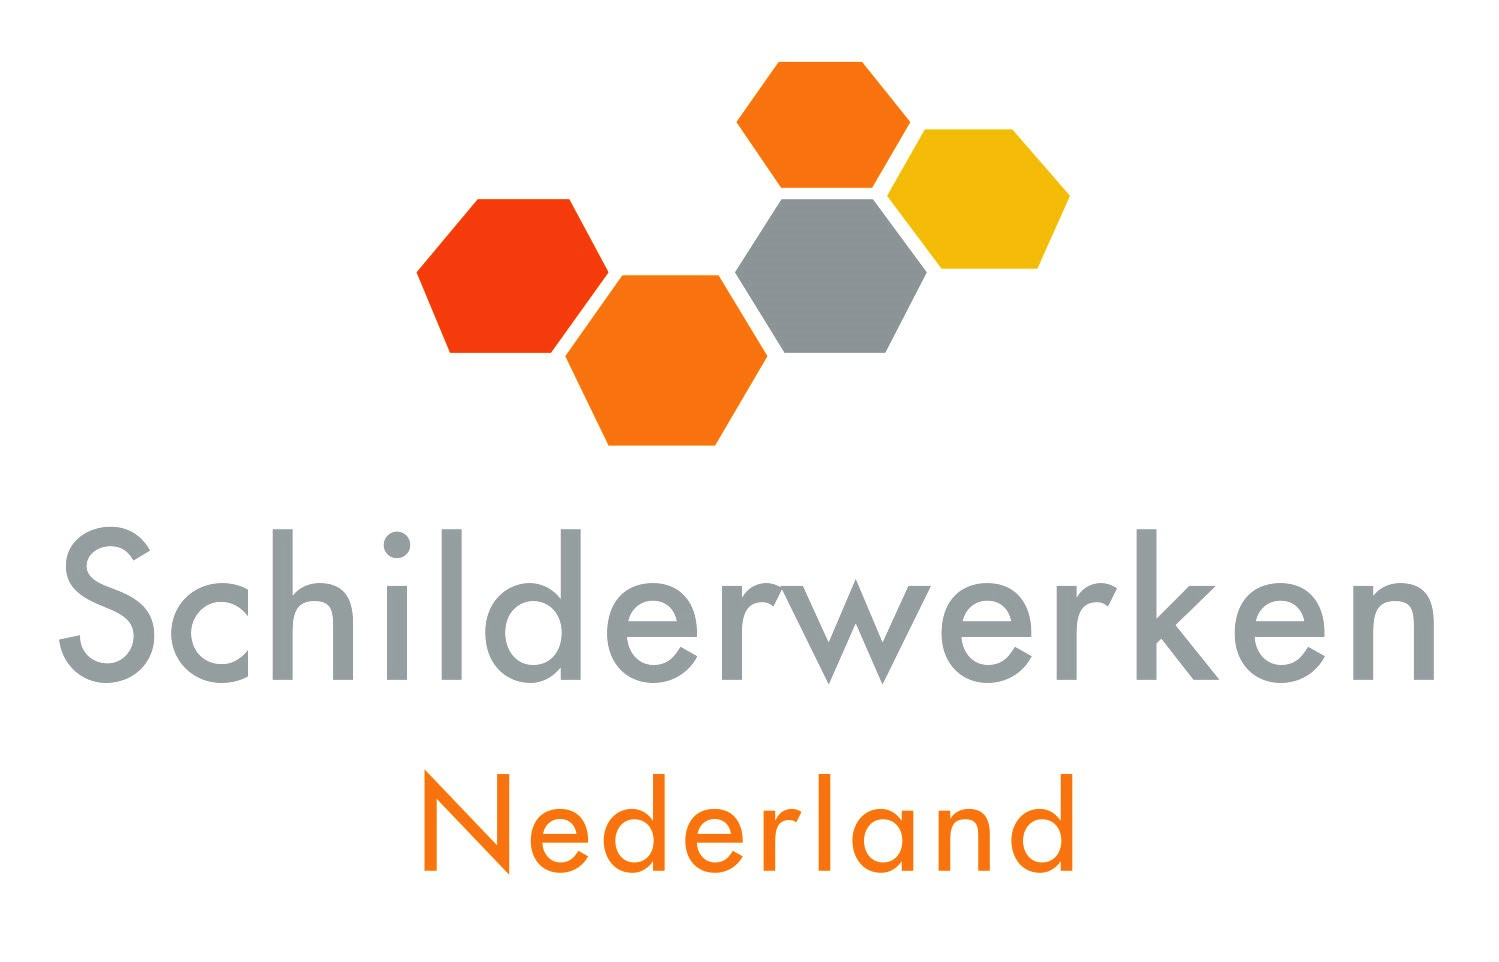 Schilderwerken Nederland logo